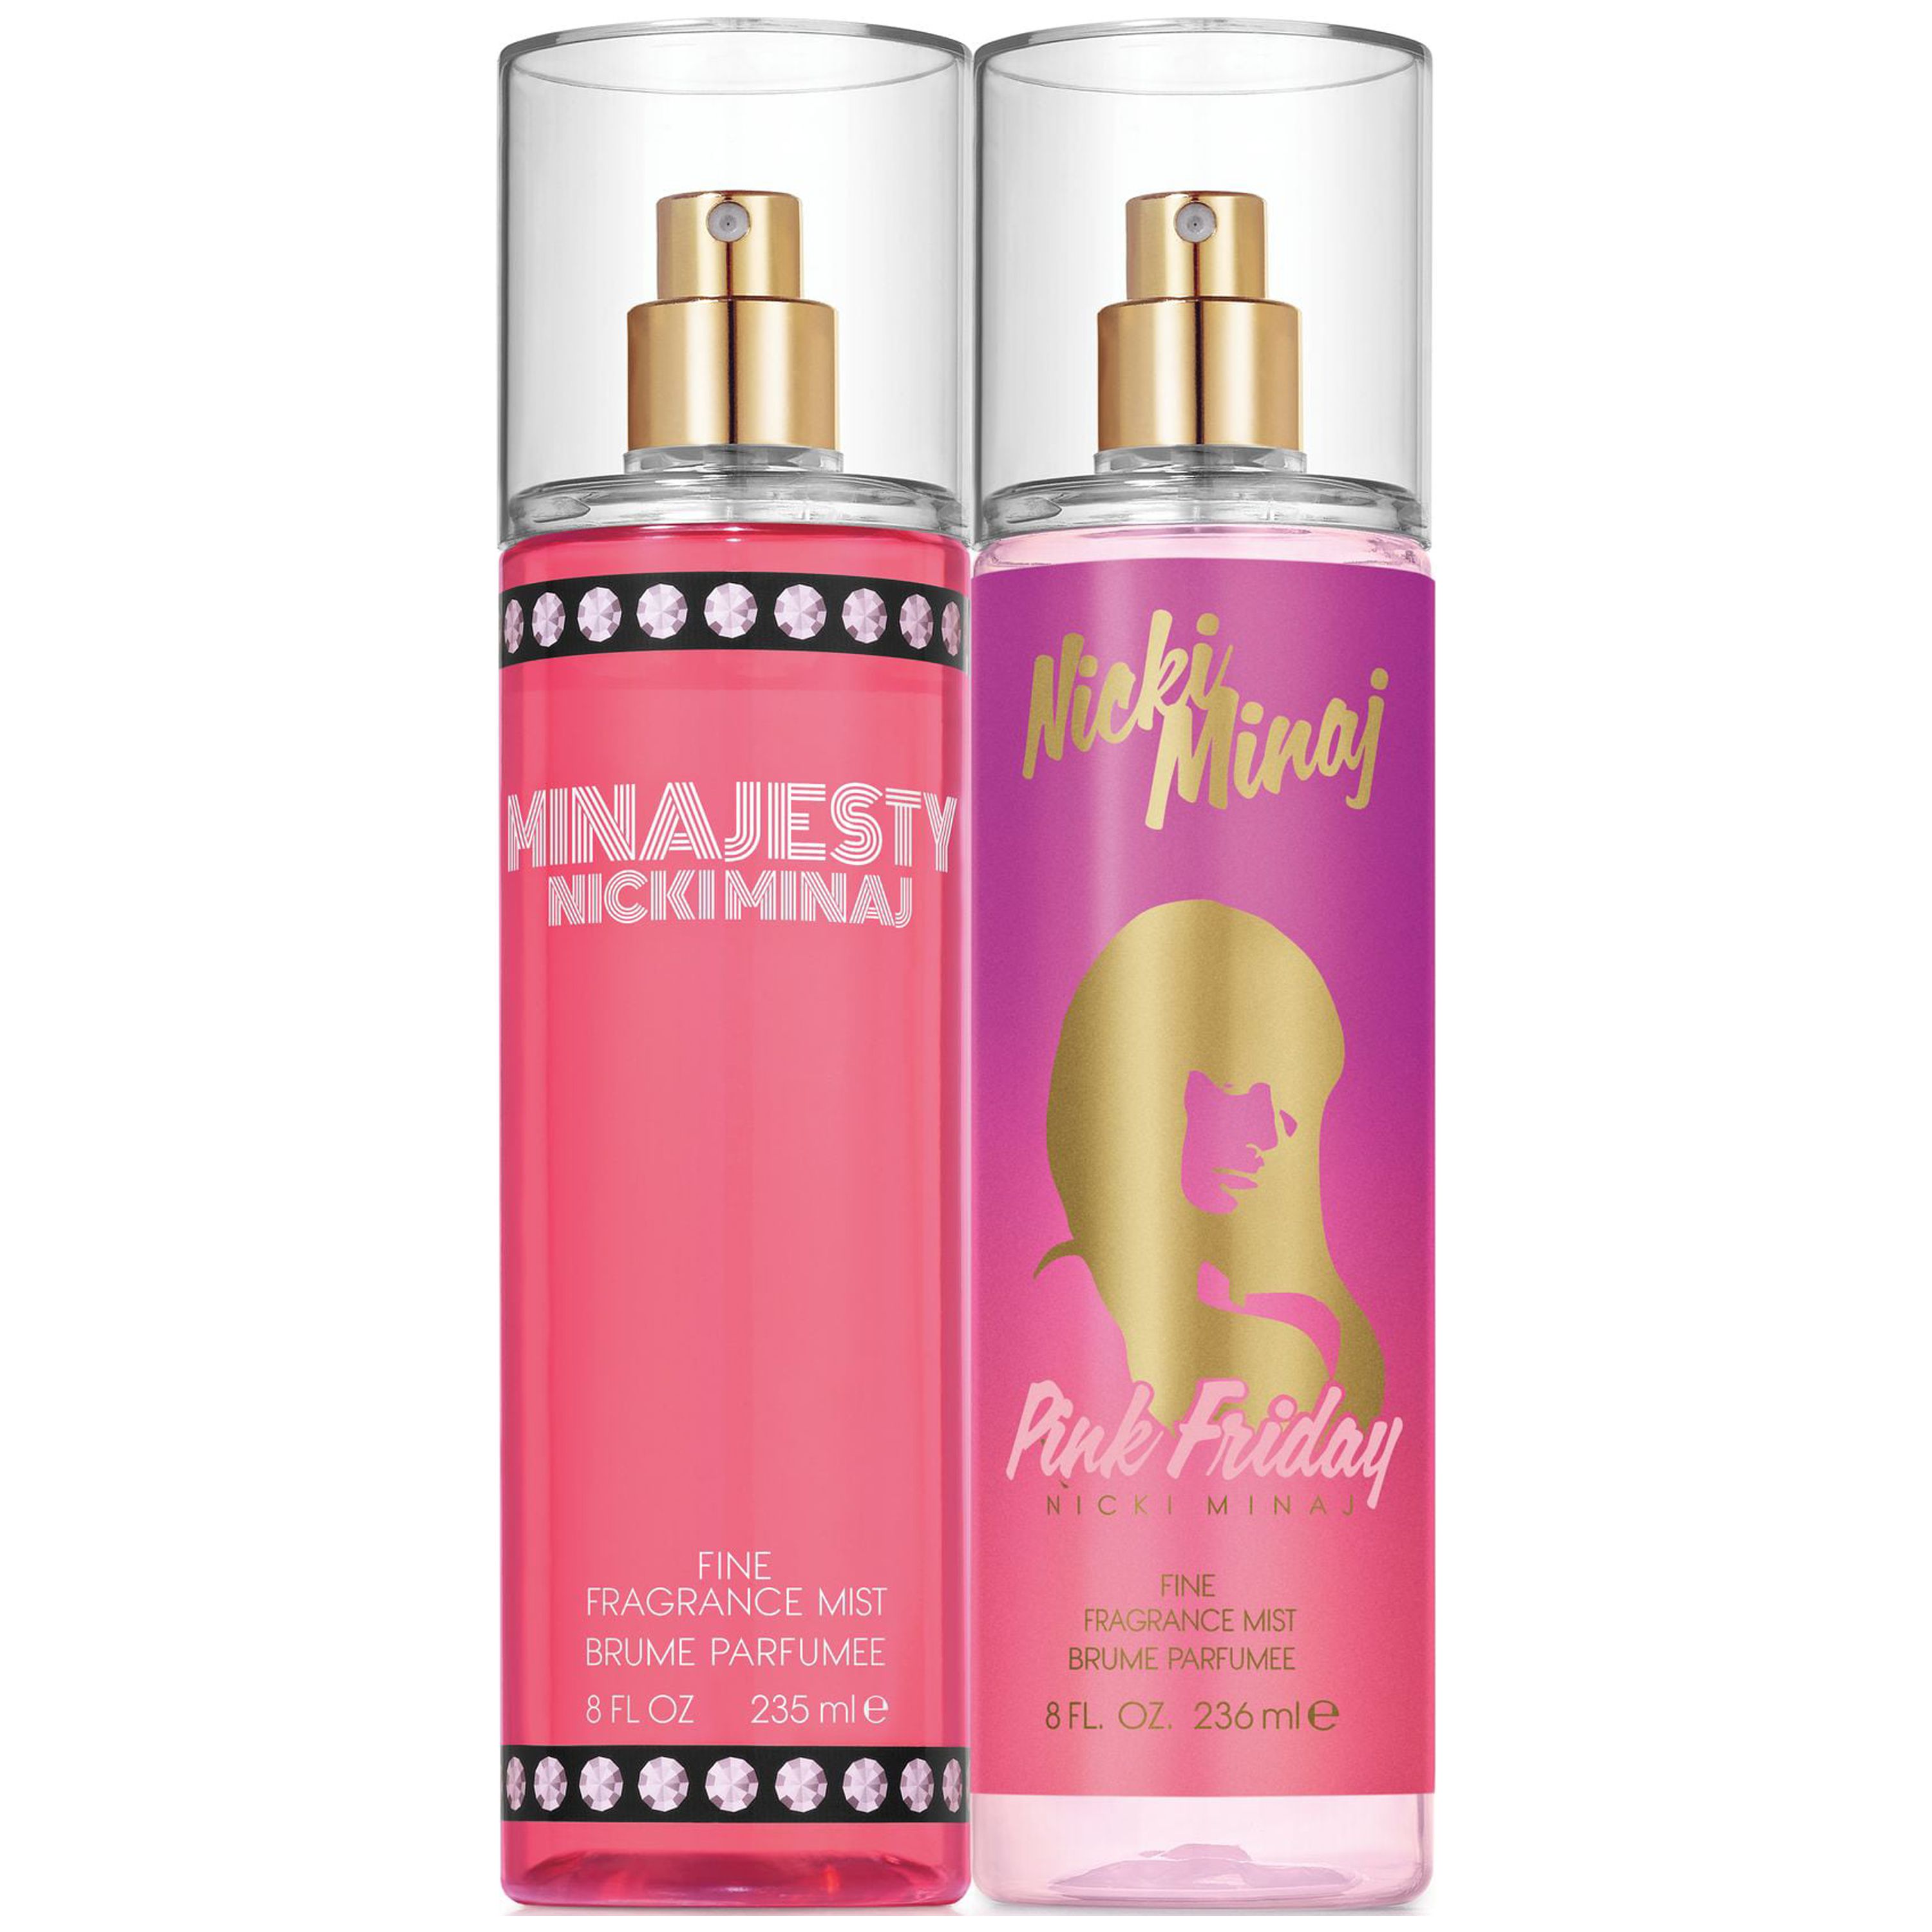 Nicki Minaj Pink Friday and Minajesty Fine Fragrance Mist for Women, 8.0 fl oz each - image 1 of 1